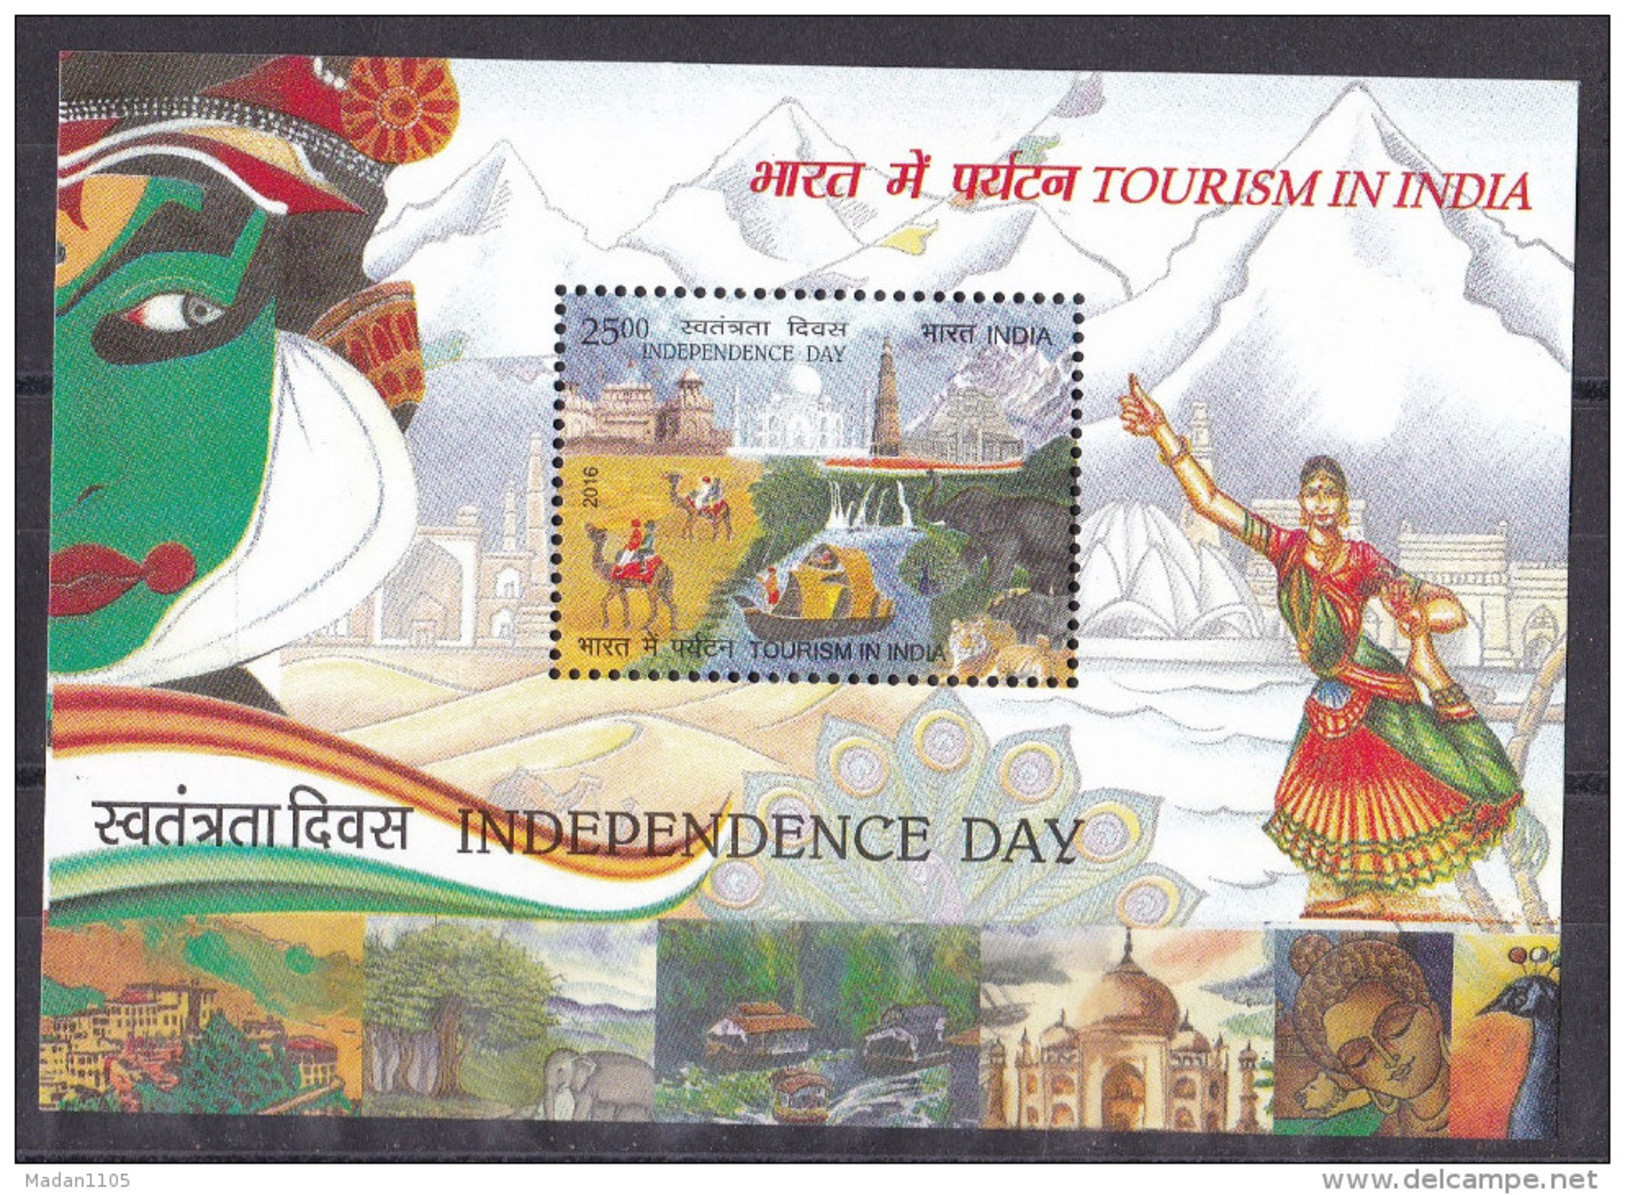 INDIA, 2016, Independence Day, Tourism, Dance, Taj Mahal, Qutub Minar, Fauna, Tiger, Camel,  Miniature Sheet, MNH, (**) - Nuovi